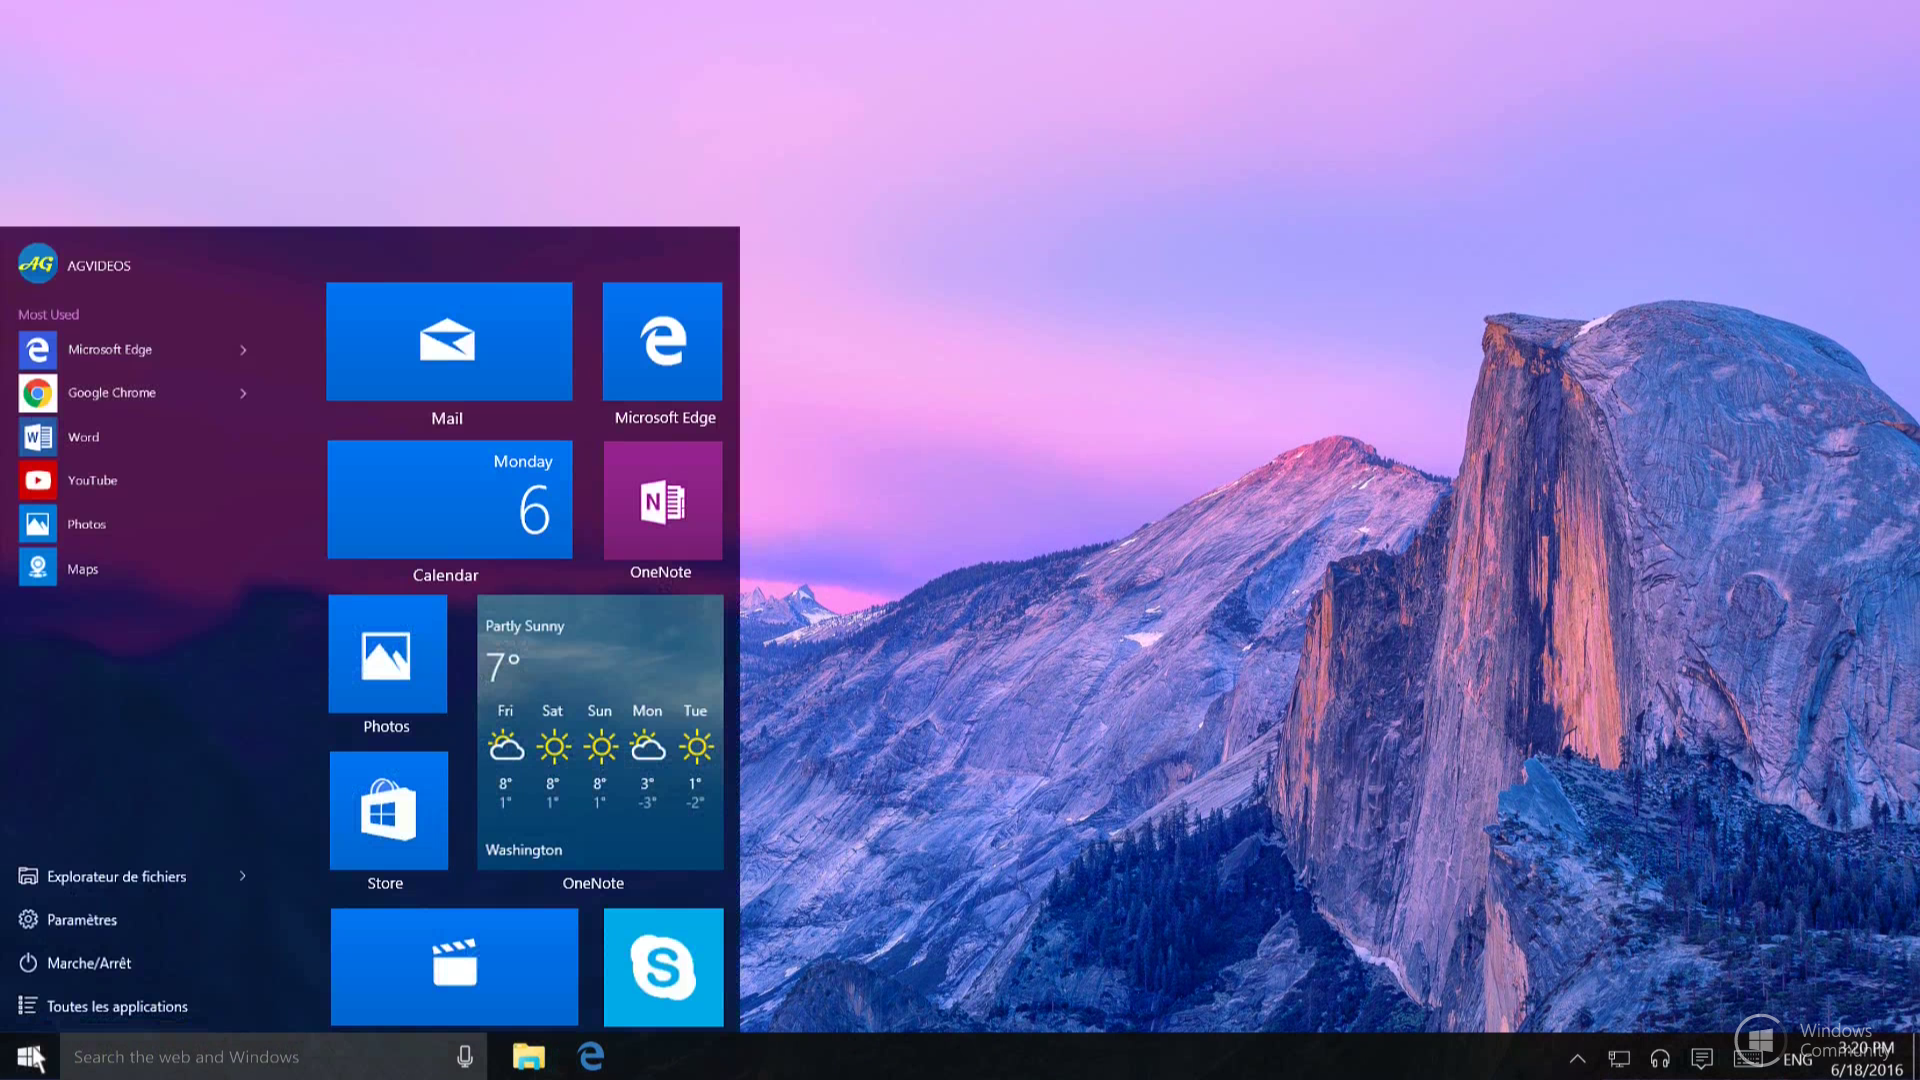 Красивый рабочий стол для windows. ОС Microsoft Windows 10. Виндовс 10 Redstone. Рабочий стол Windows 10. Красивый Интерфейс рабочего стола.